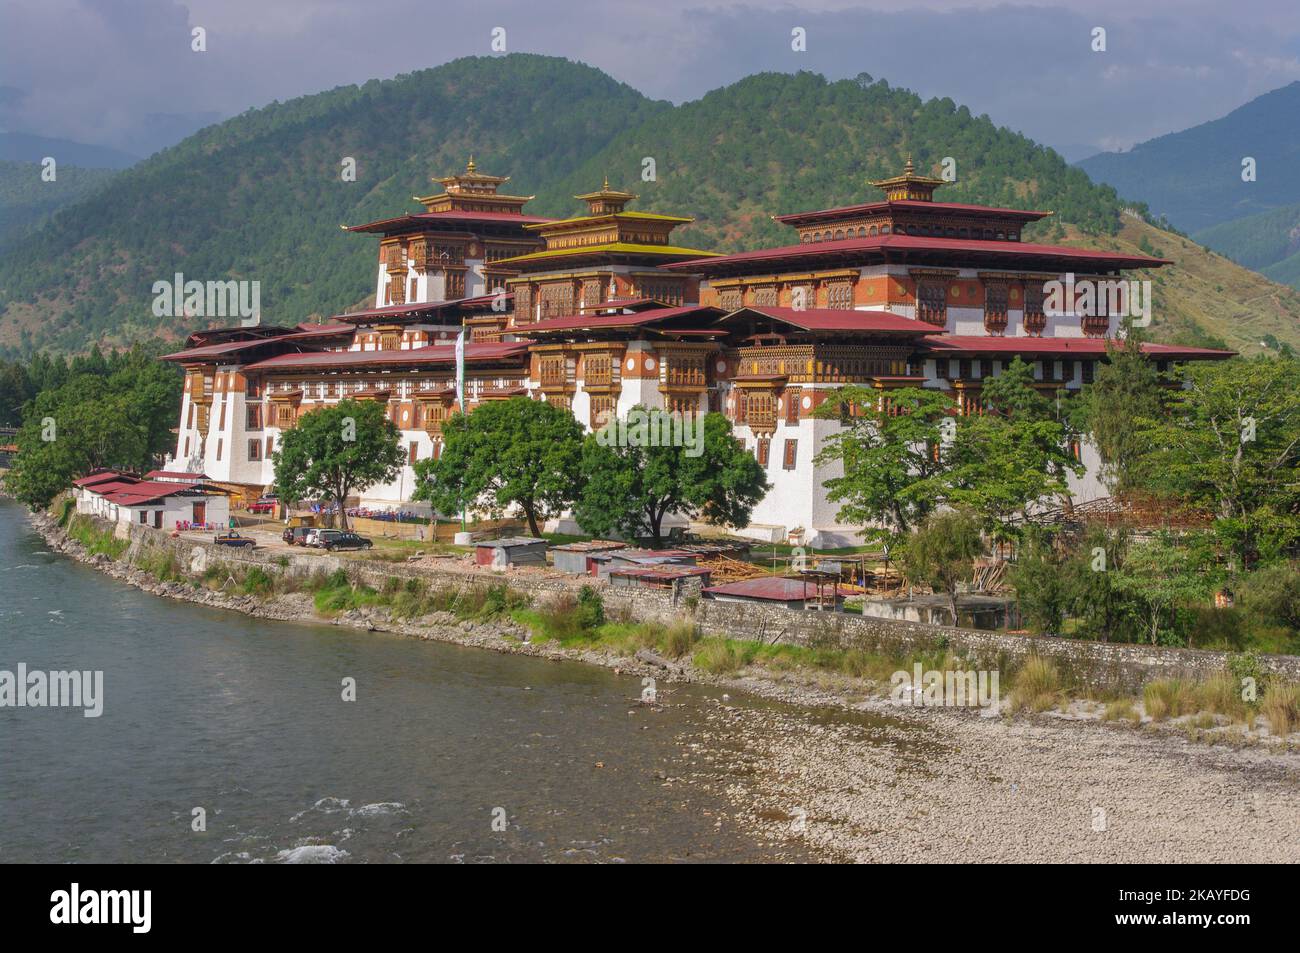 Vue panoramique sur le paysage de l'ancien site historique de Punakha dzong sur la rive du fleuve Mo Chhu, dans l'ouest du Bhoutan Banque D'Images